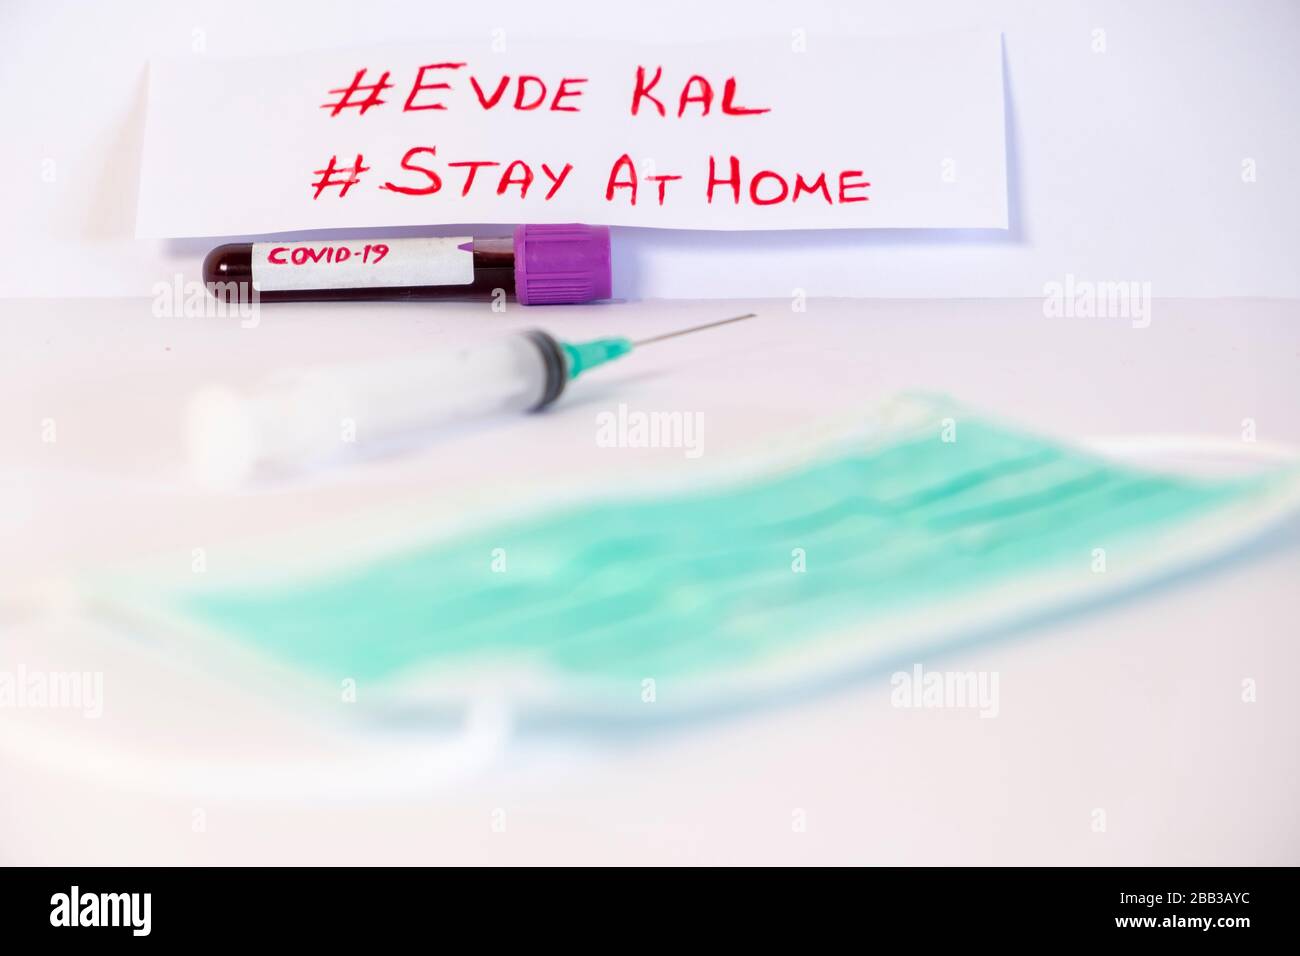 'Say a casa, evde kal'scrivendo su di esso, in inglese e turco. Provetta con campione di sangue per il test COVID-19 Foto Stock